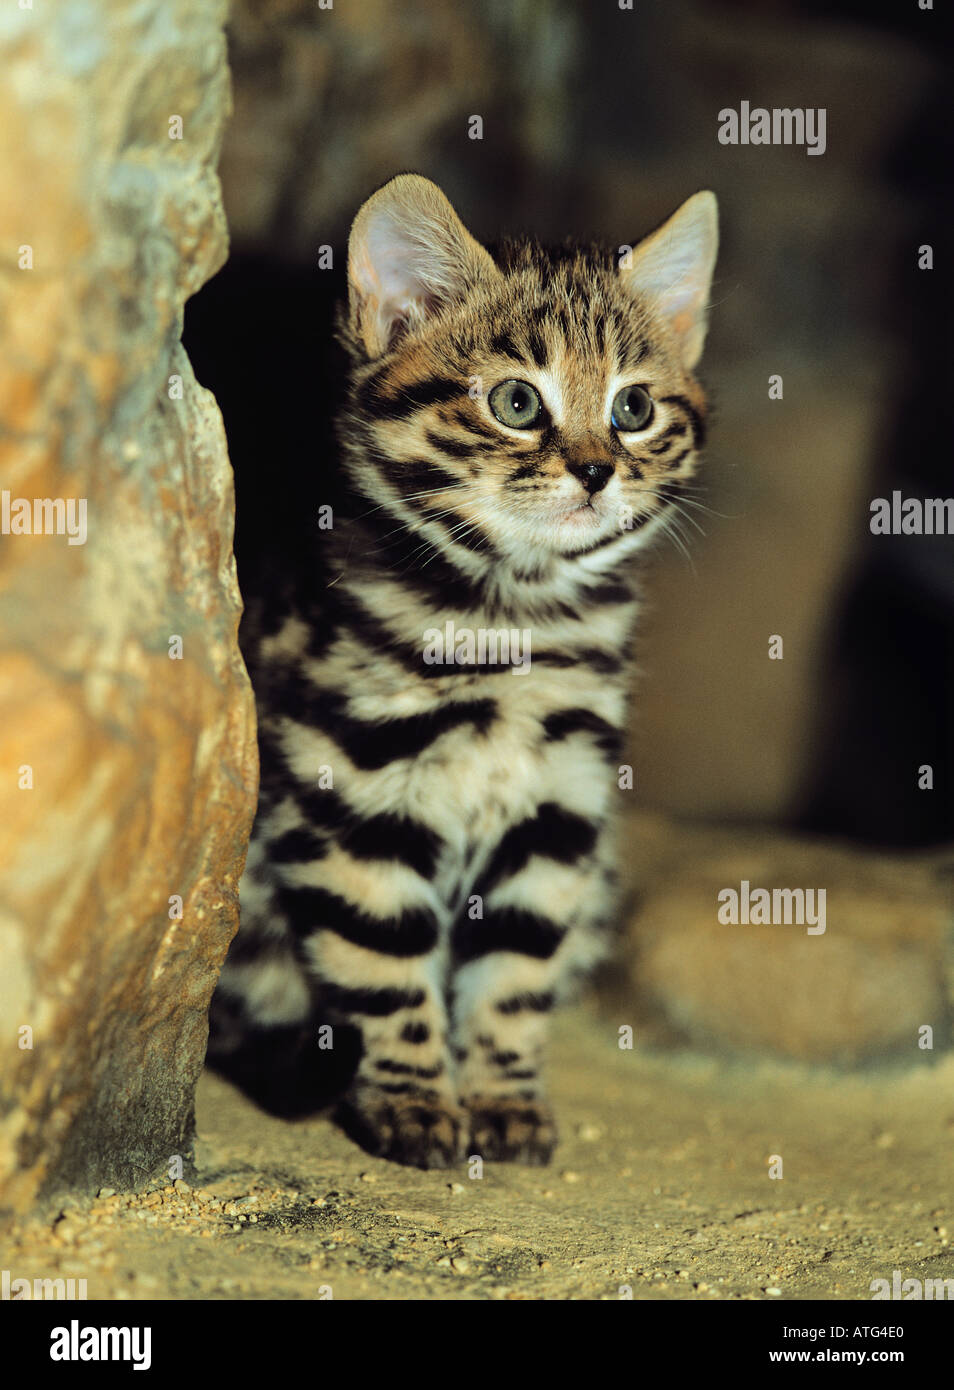 Gato de patas negras (Felis nigripes), gatito sentado Foto de stock